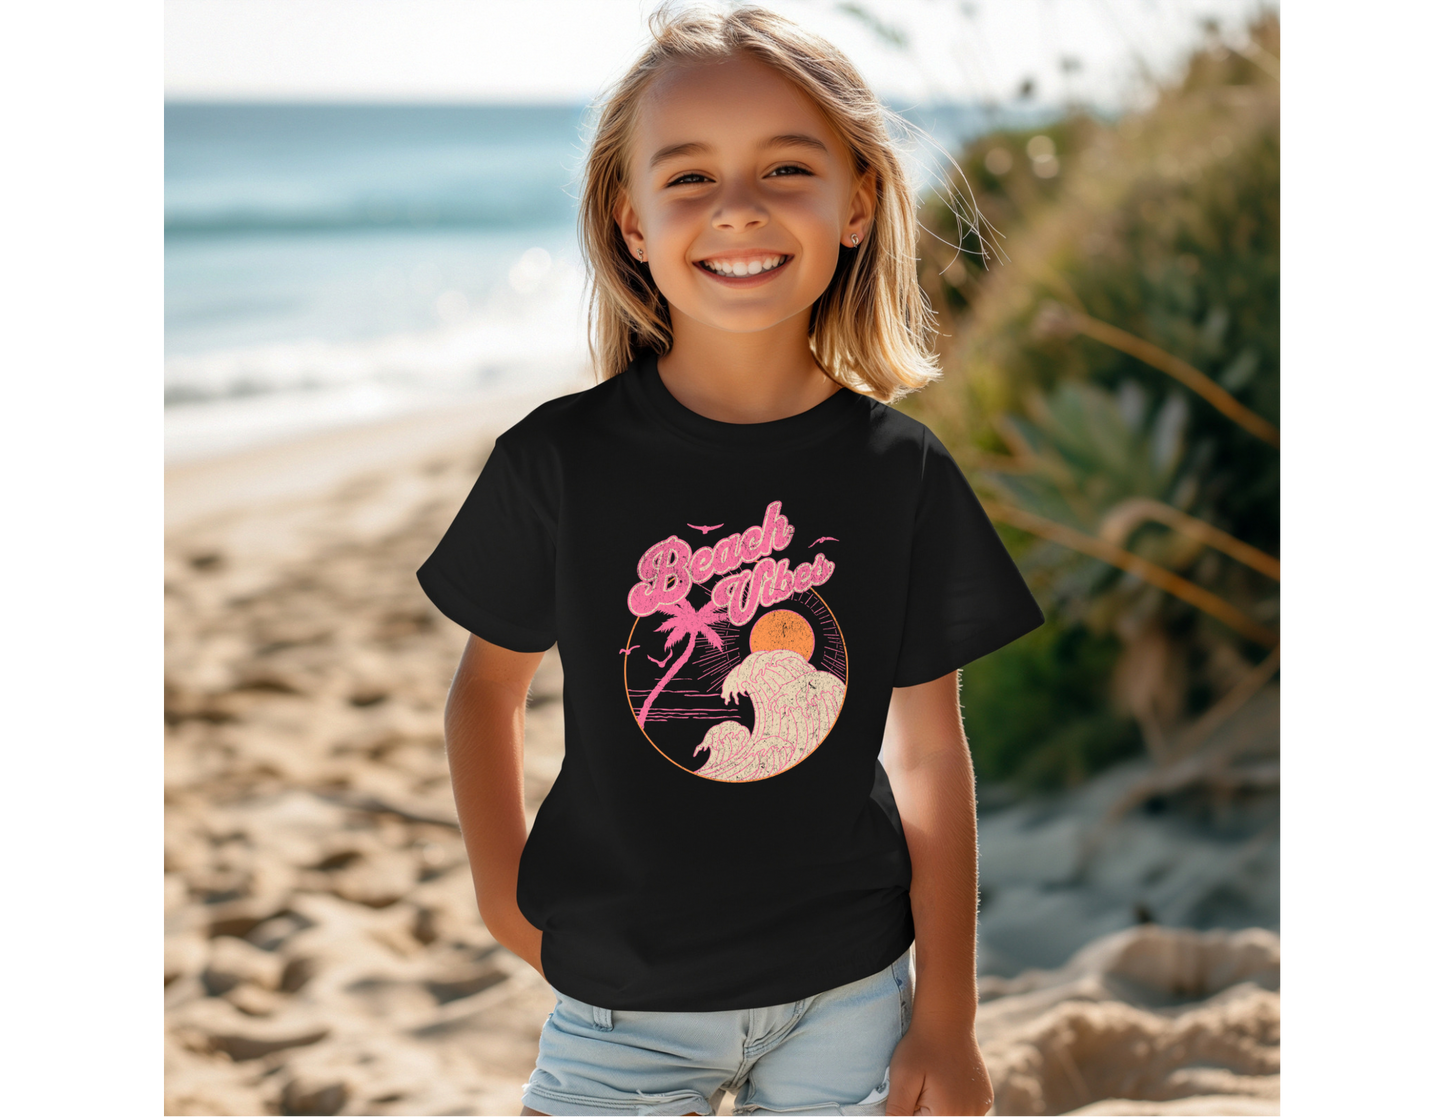 Girls Beach Vibes Shirt